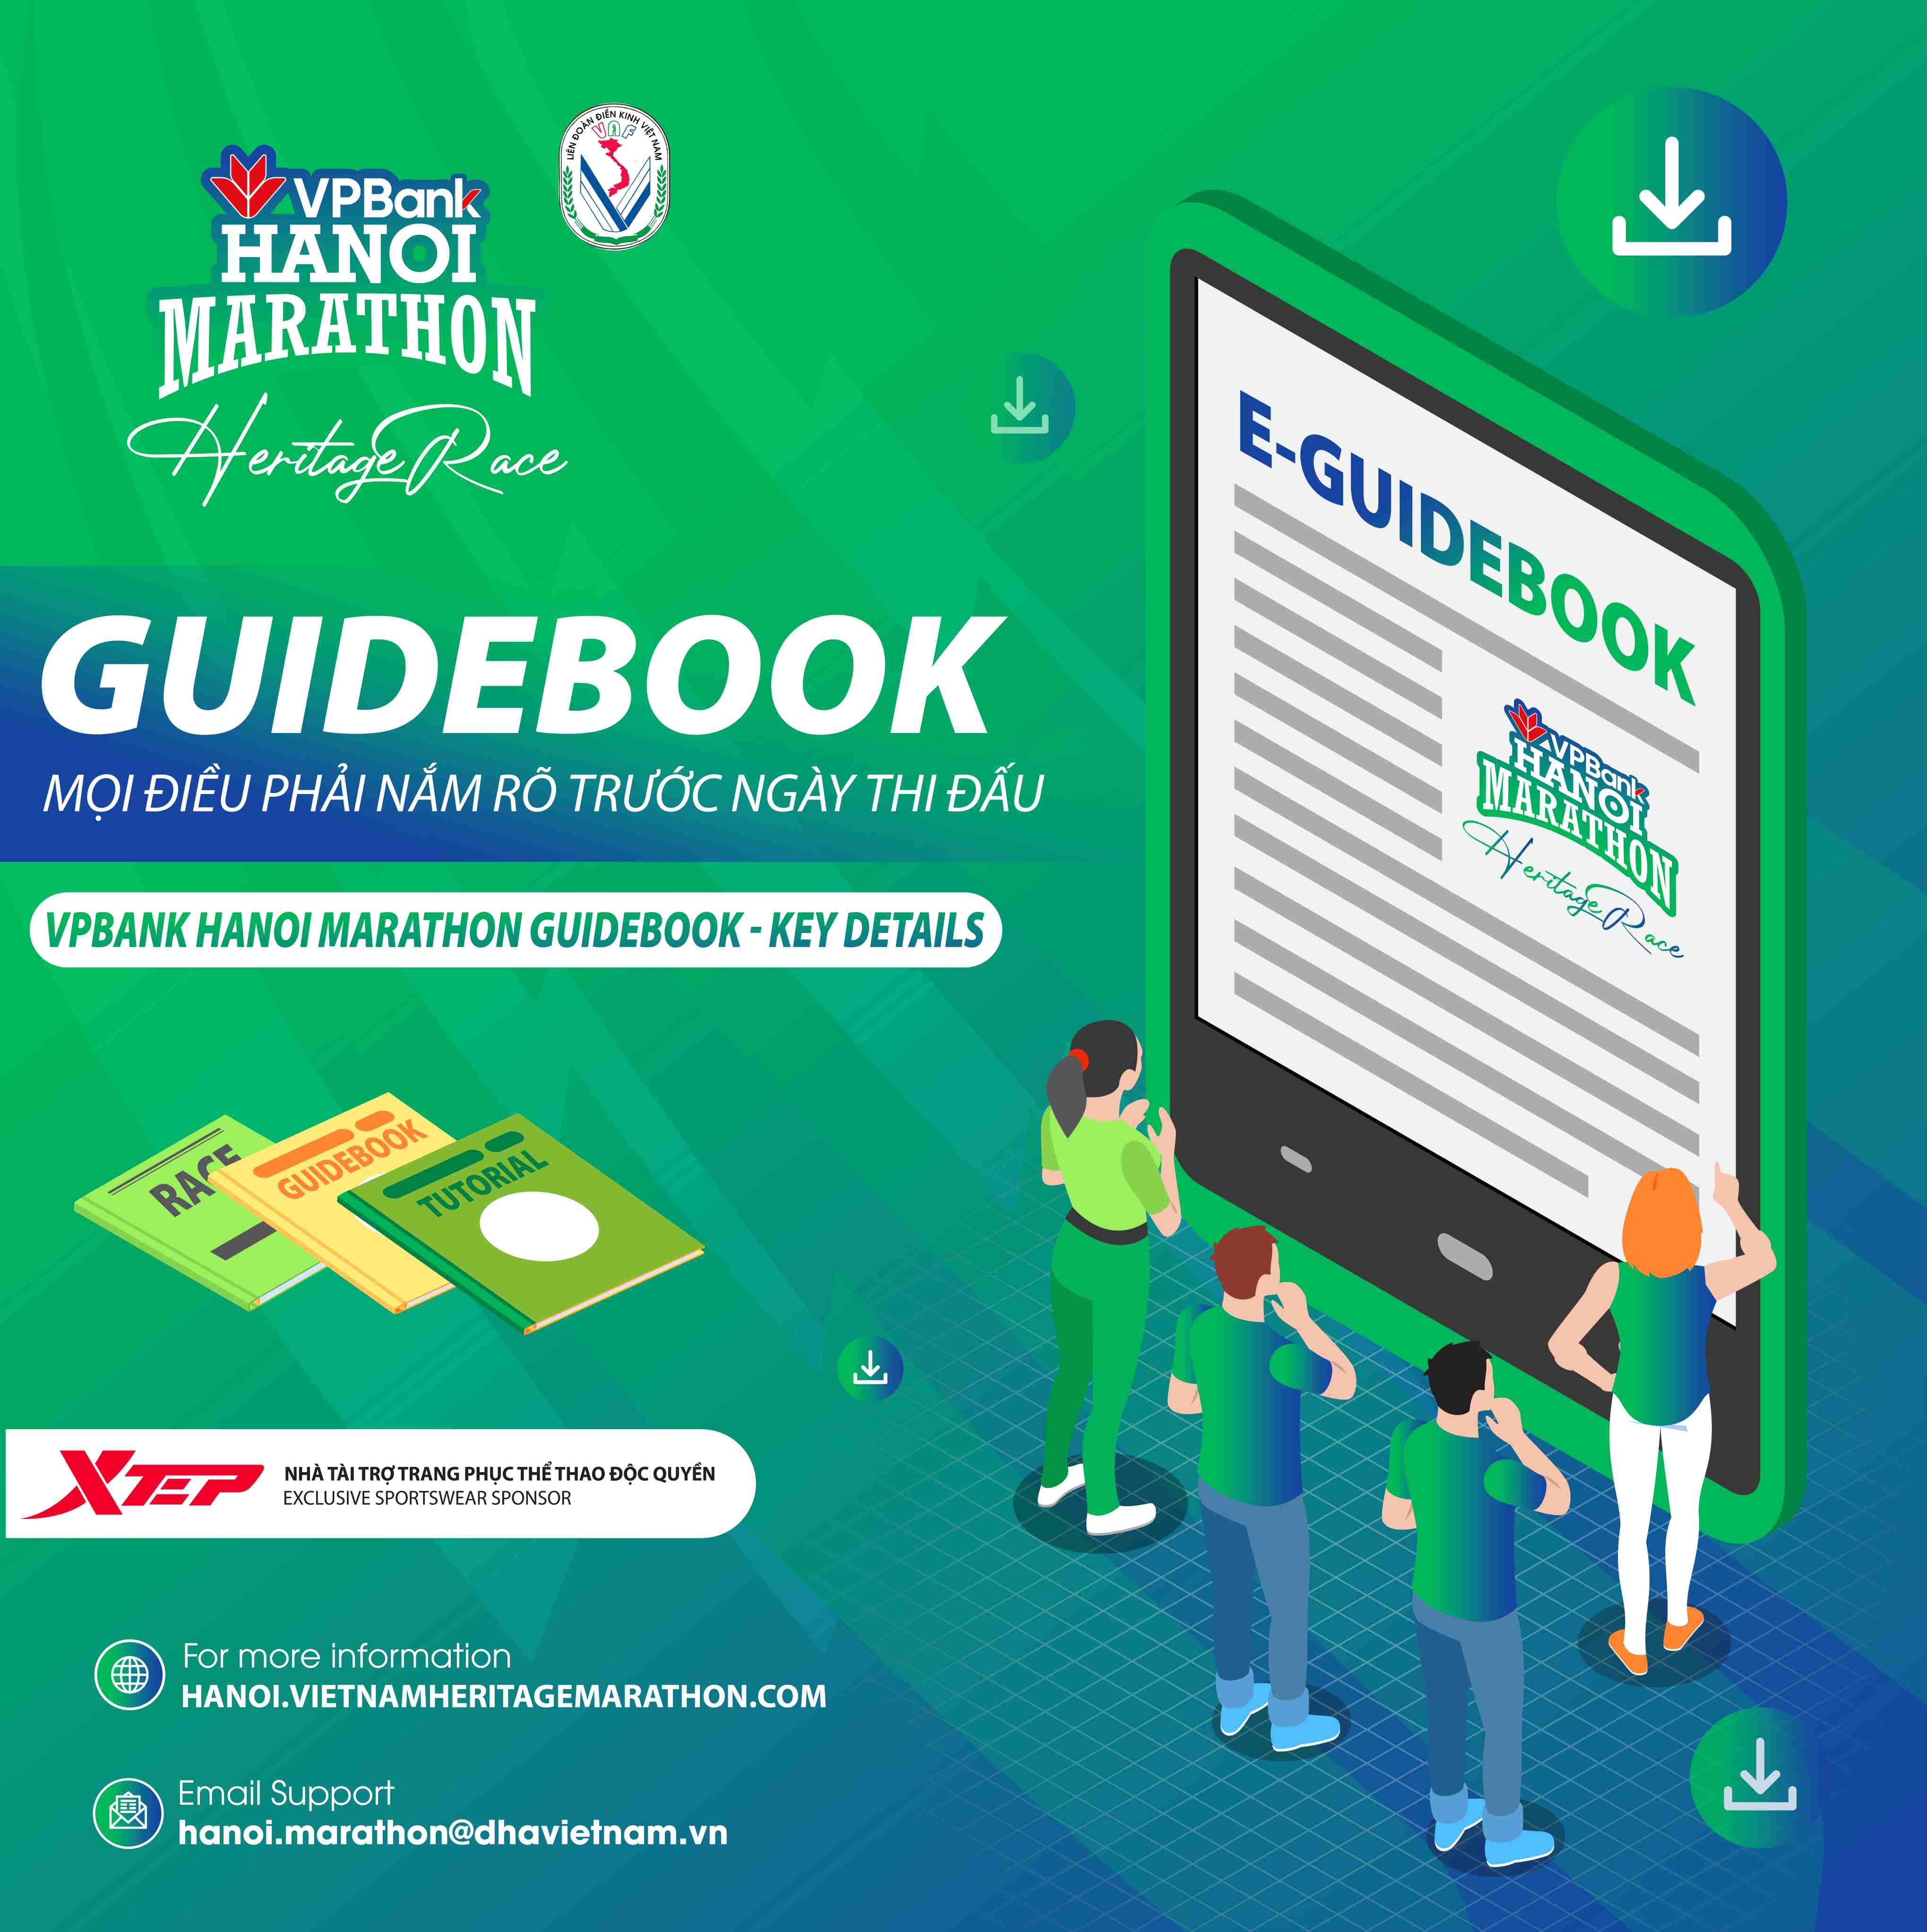 VPBank Hanoi Marathon 2021 Công Bố Guidebook Cho Vận Động Viên